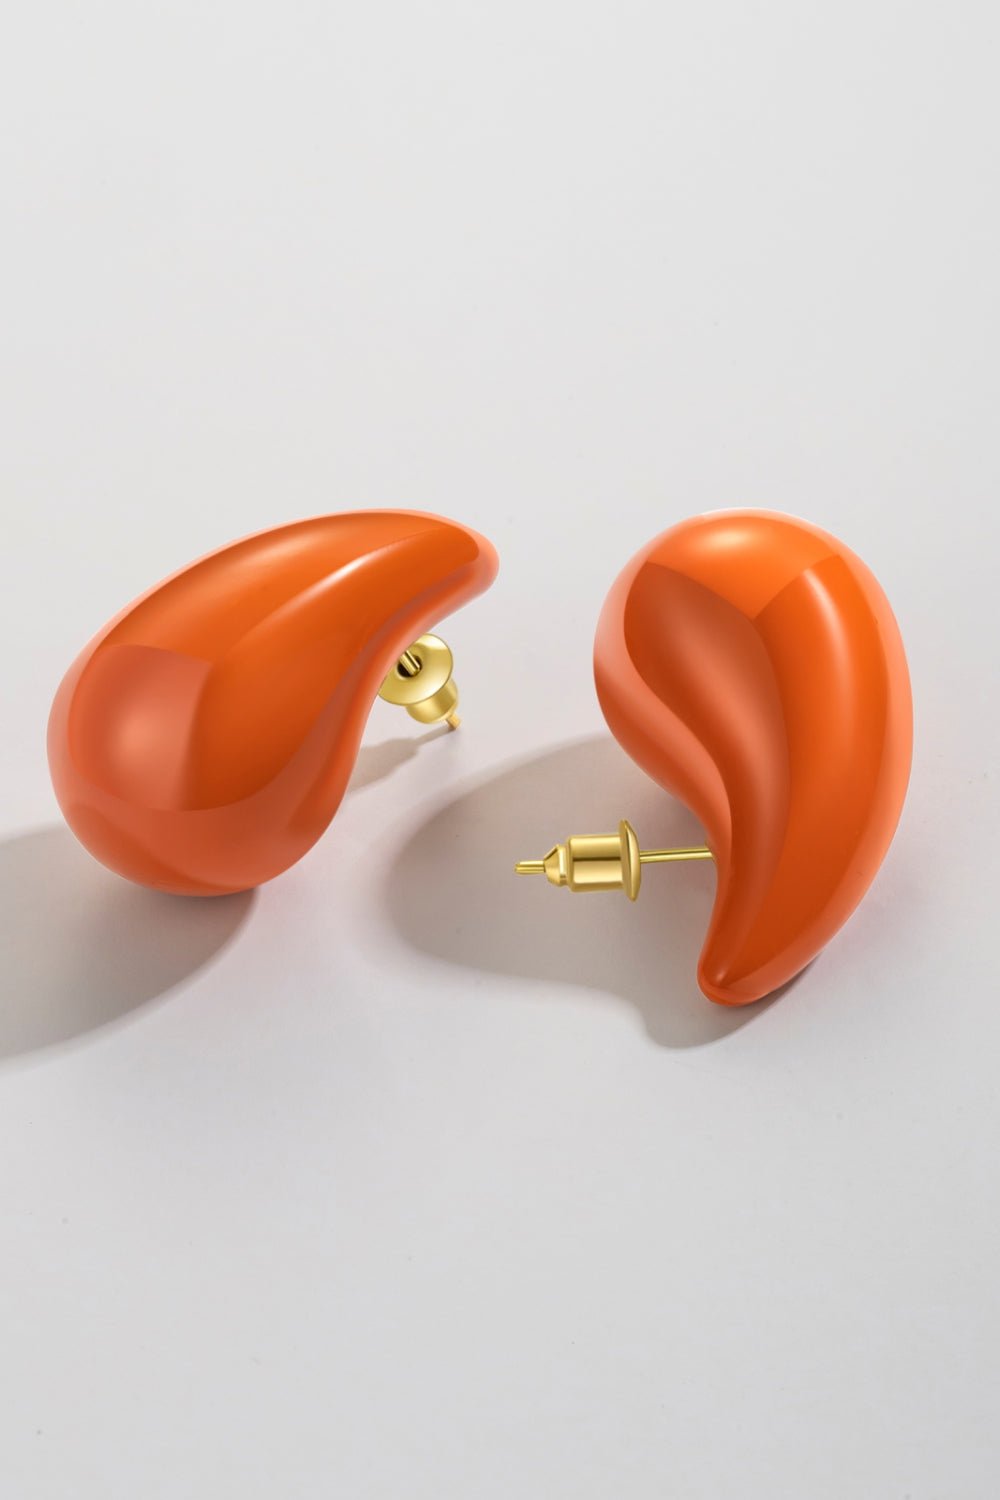 Big Size Water Drop Brass Earrings - Beauty Junkee Collection